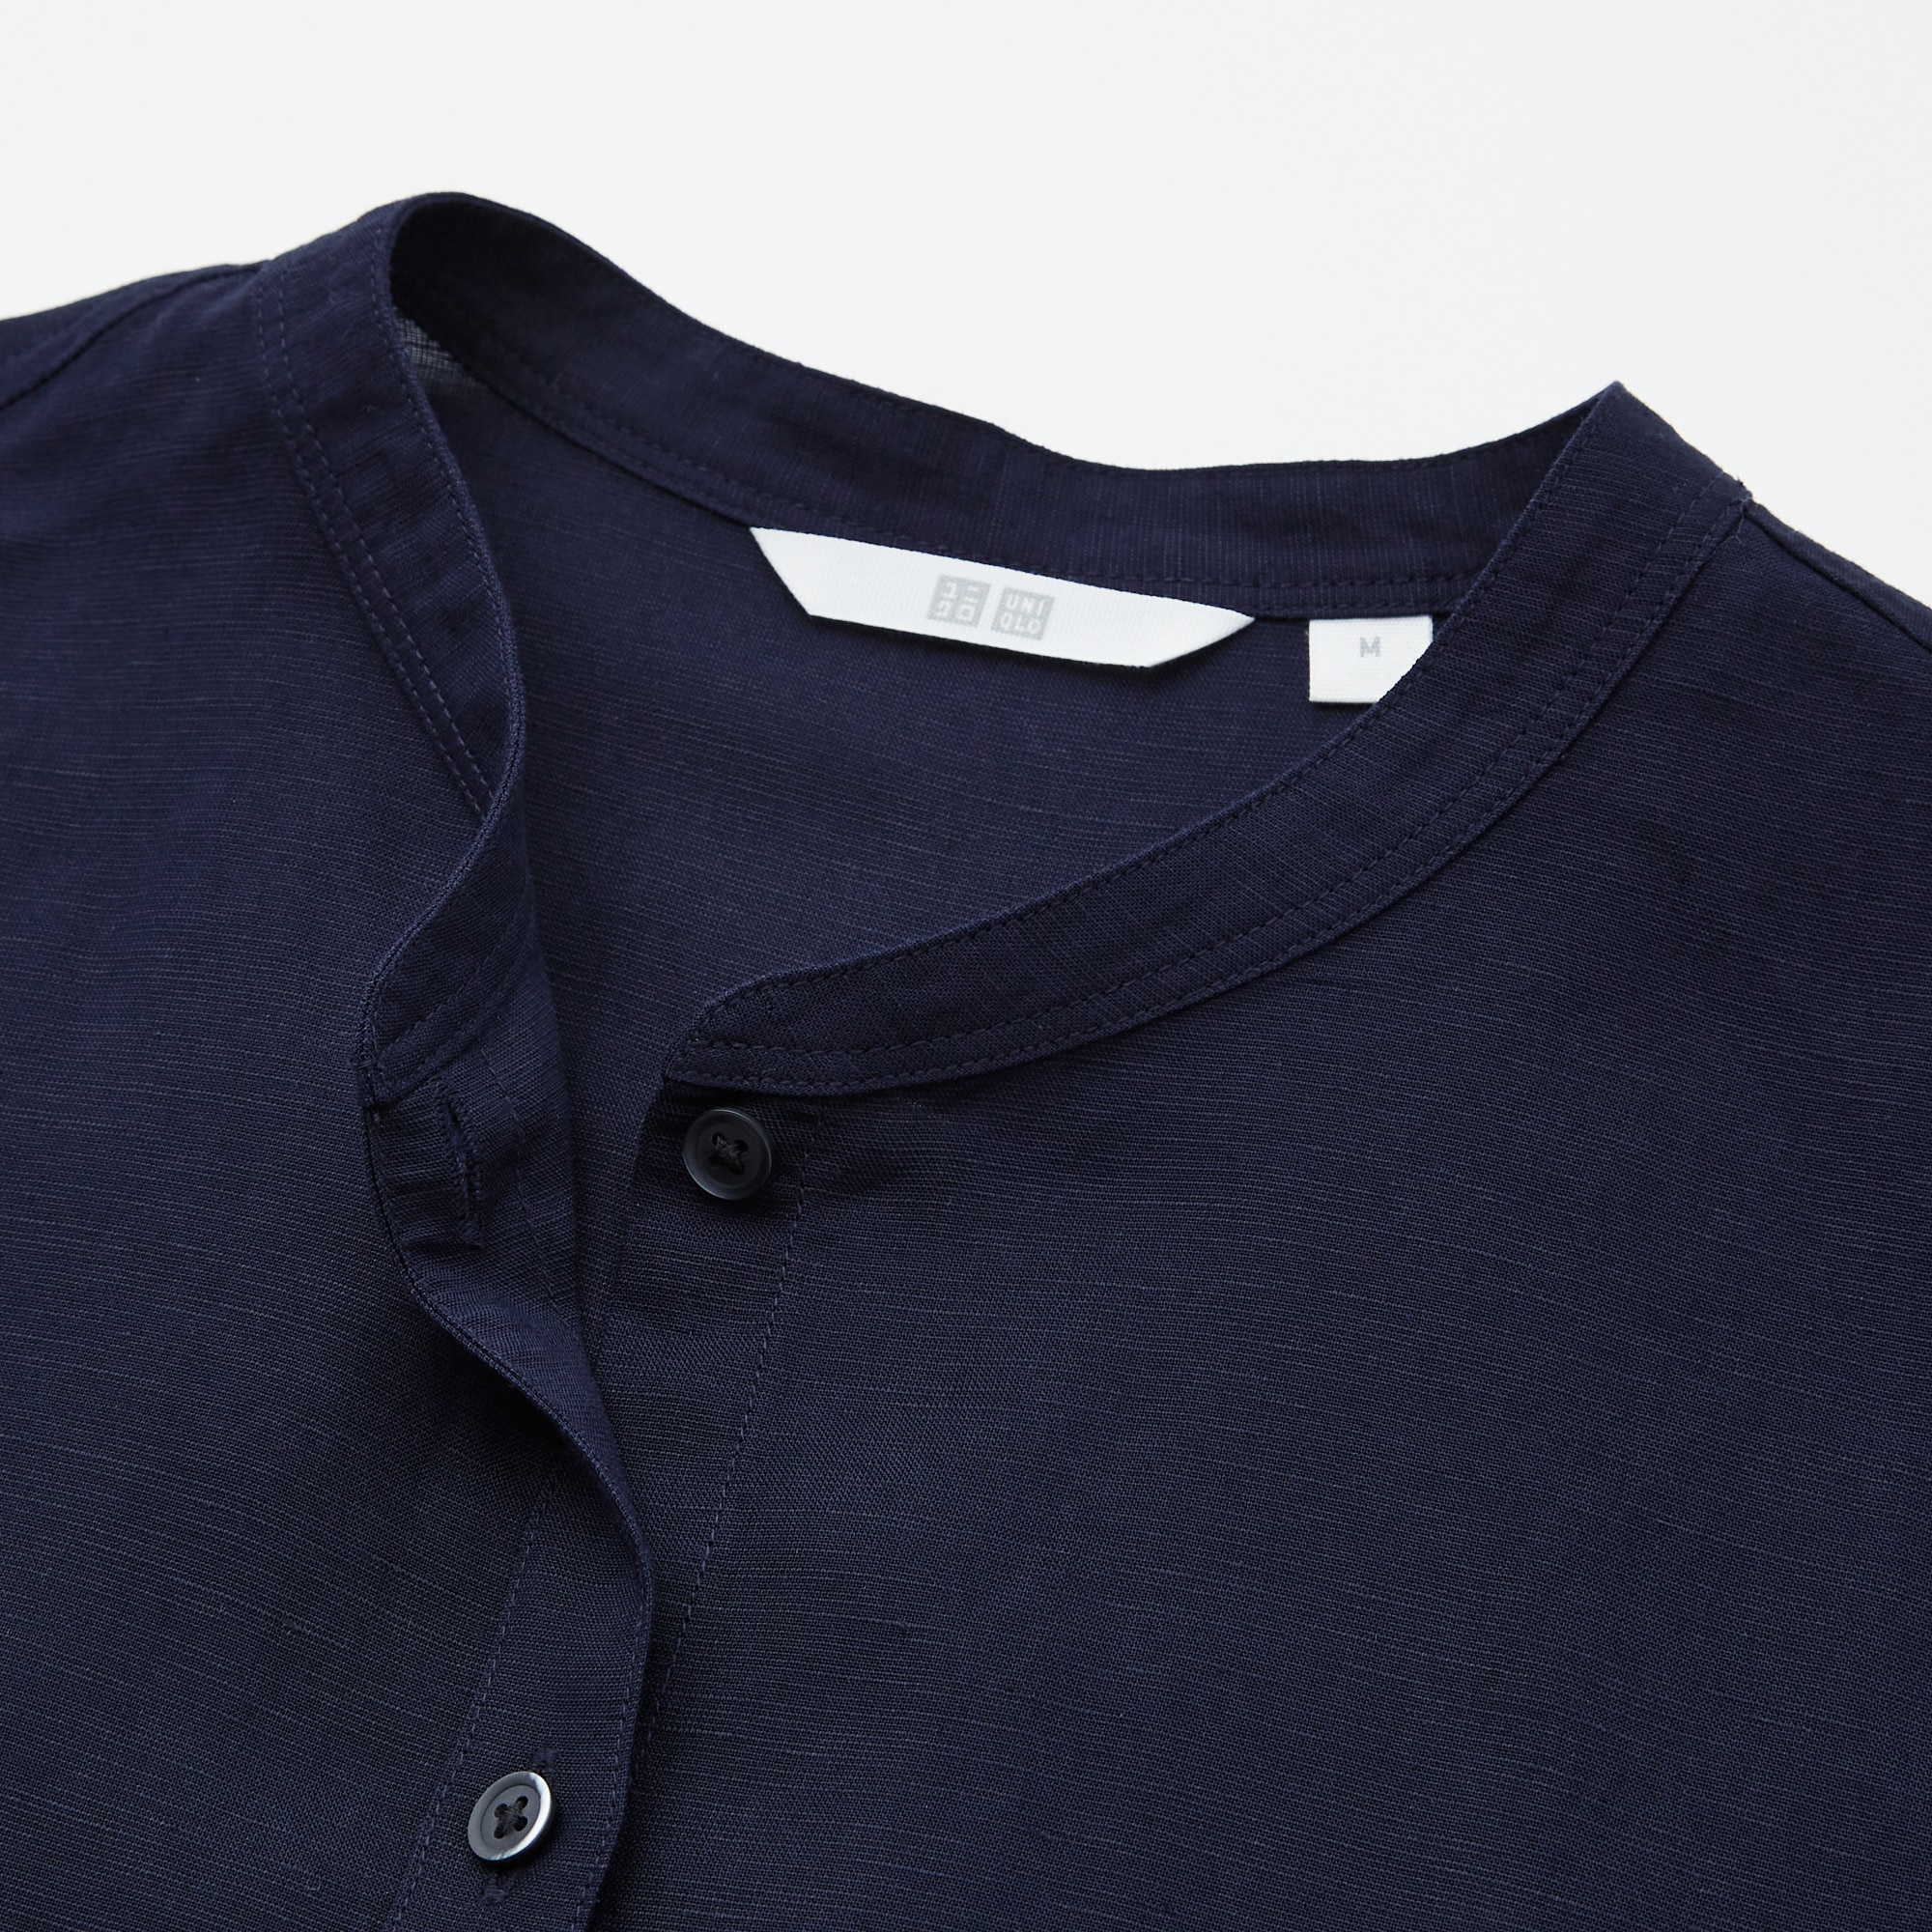 新品 UNIQLO リネンコットン スタンドカラーシャツ 長袖 シャツ メンズ XL ネイビー 紺色 春夏物 麻 綿 マオカラー ユニクロ  バンドカラー メンズ UNIQLOスタンドカラーシャツ